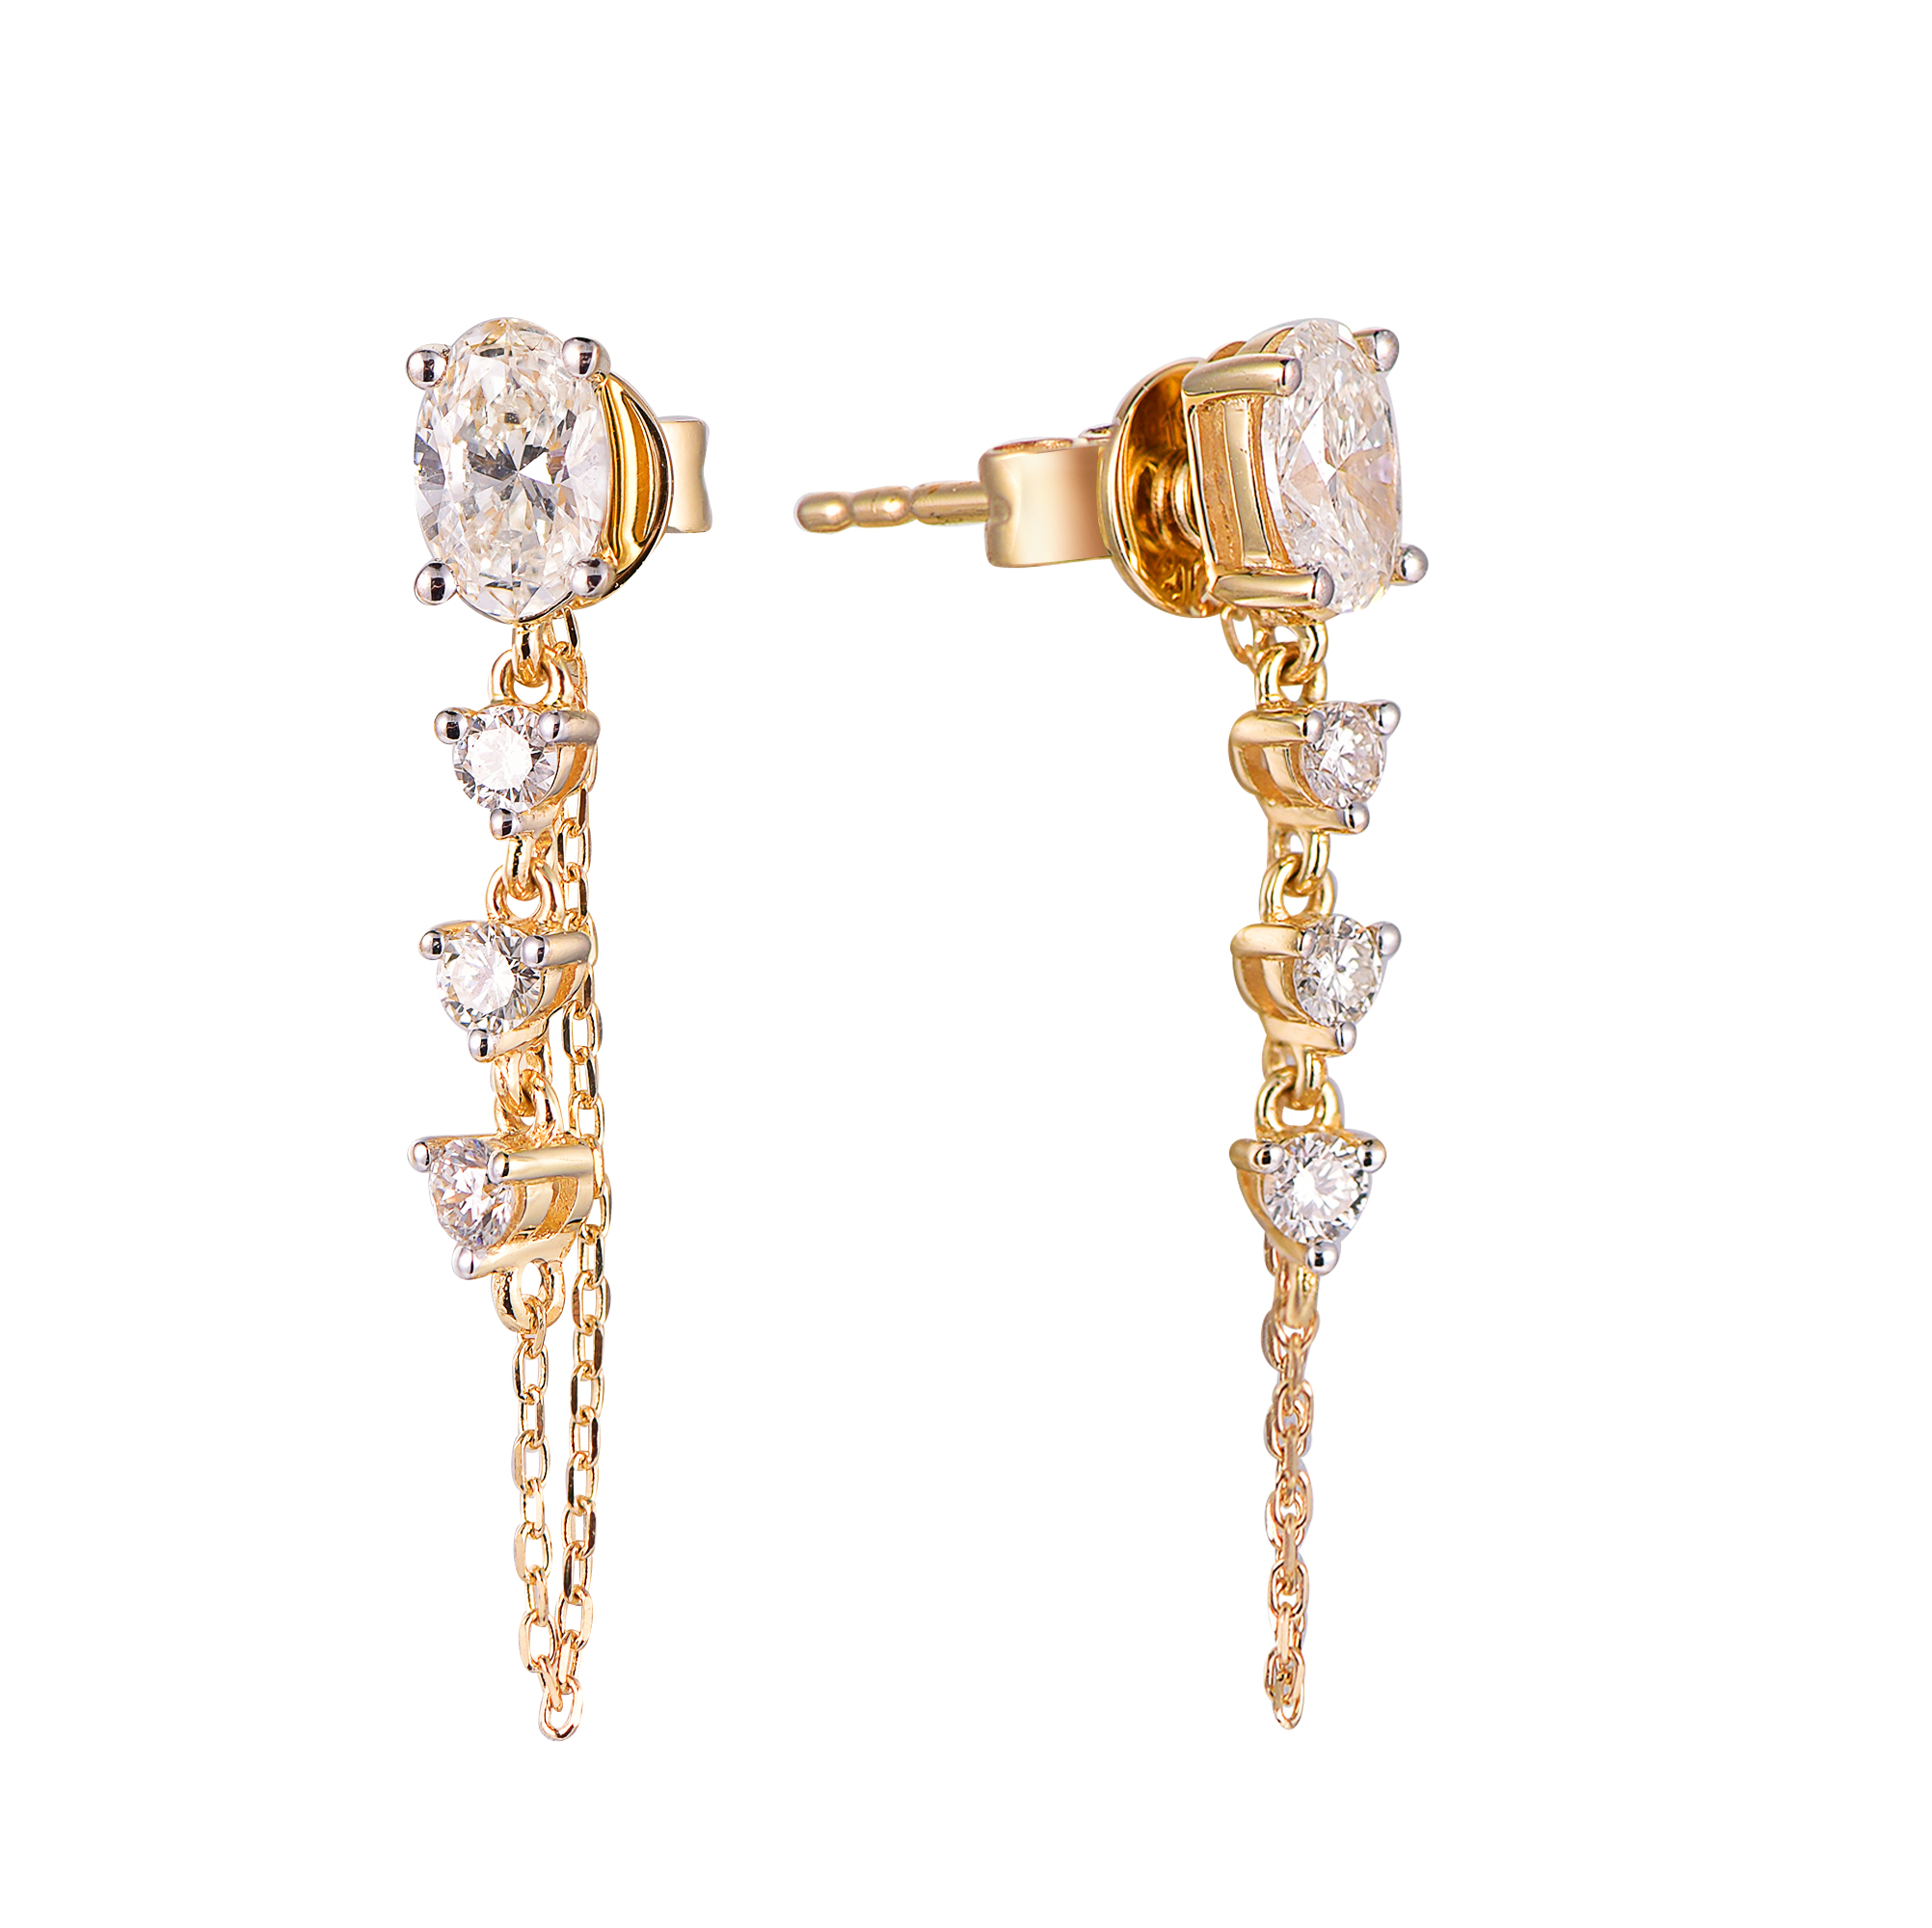 DI45468E 18K yellow gold fancy diamond earrings